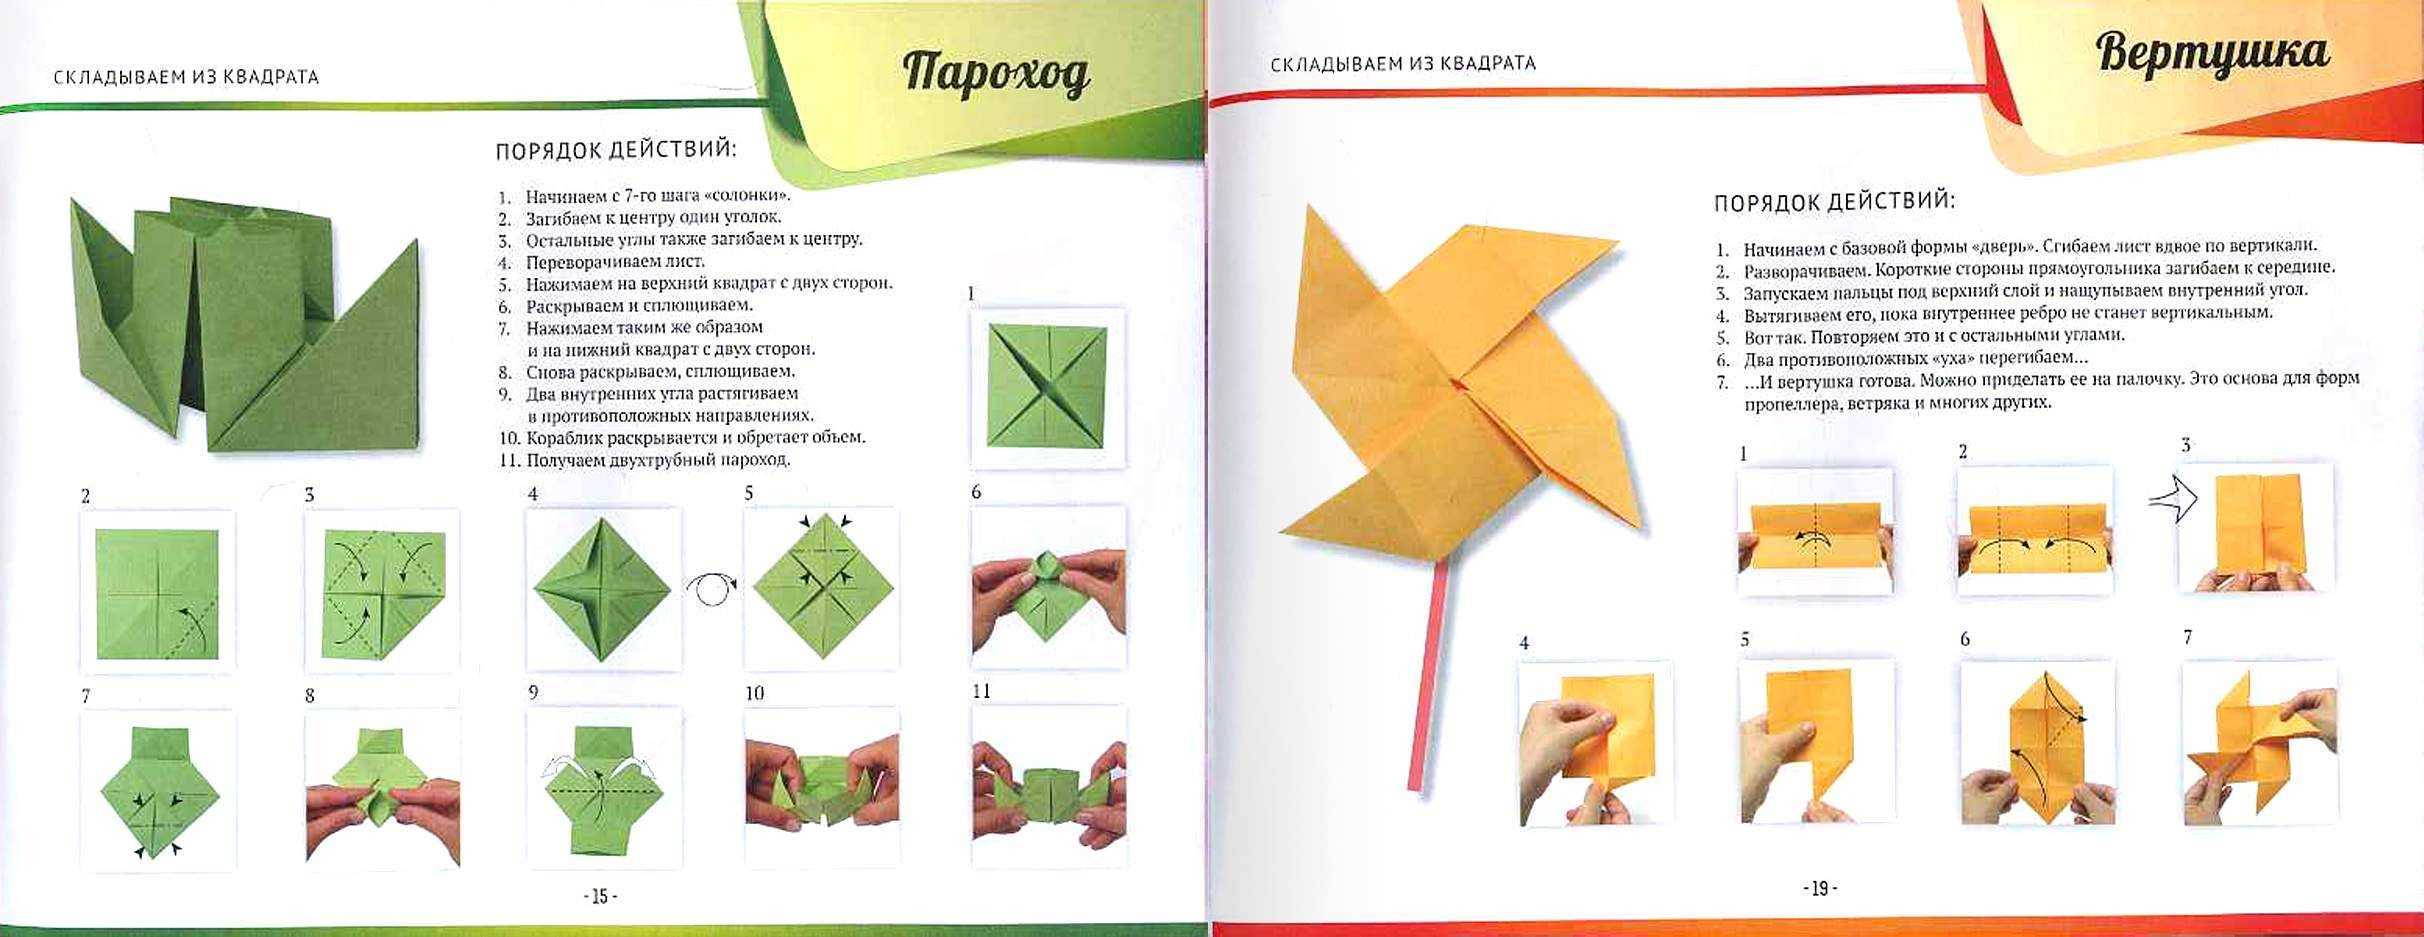 Творчество создания поделок из бумаги - оригами Веселое и занятное увлечение для любителей складывания бумаги - оригами Выбирайте себе новую модель